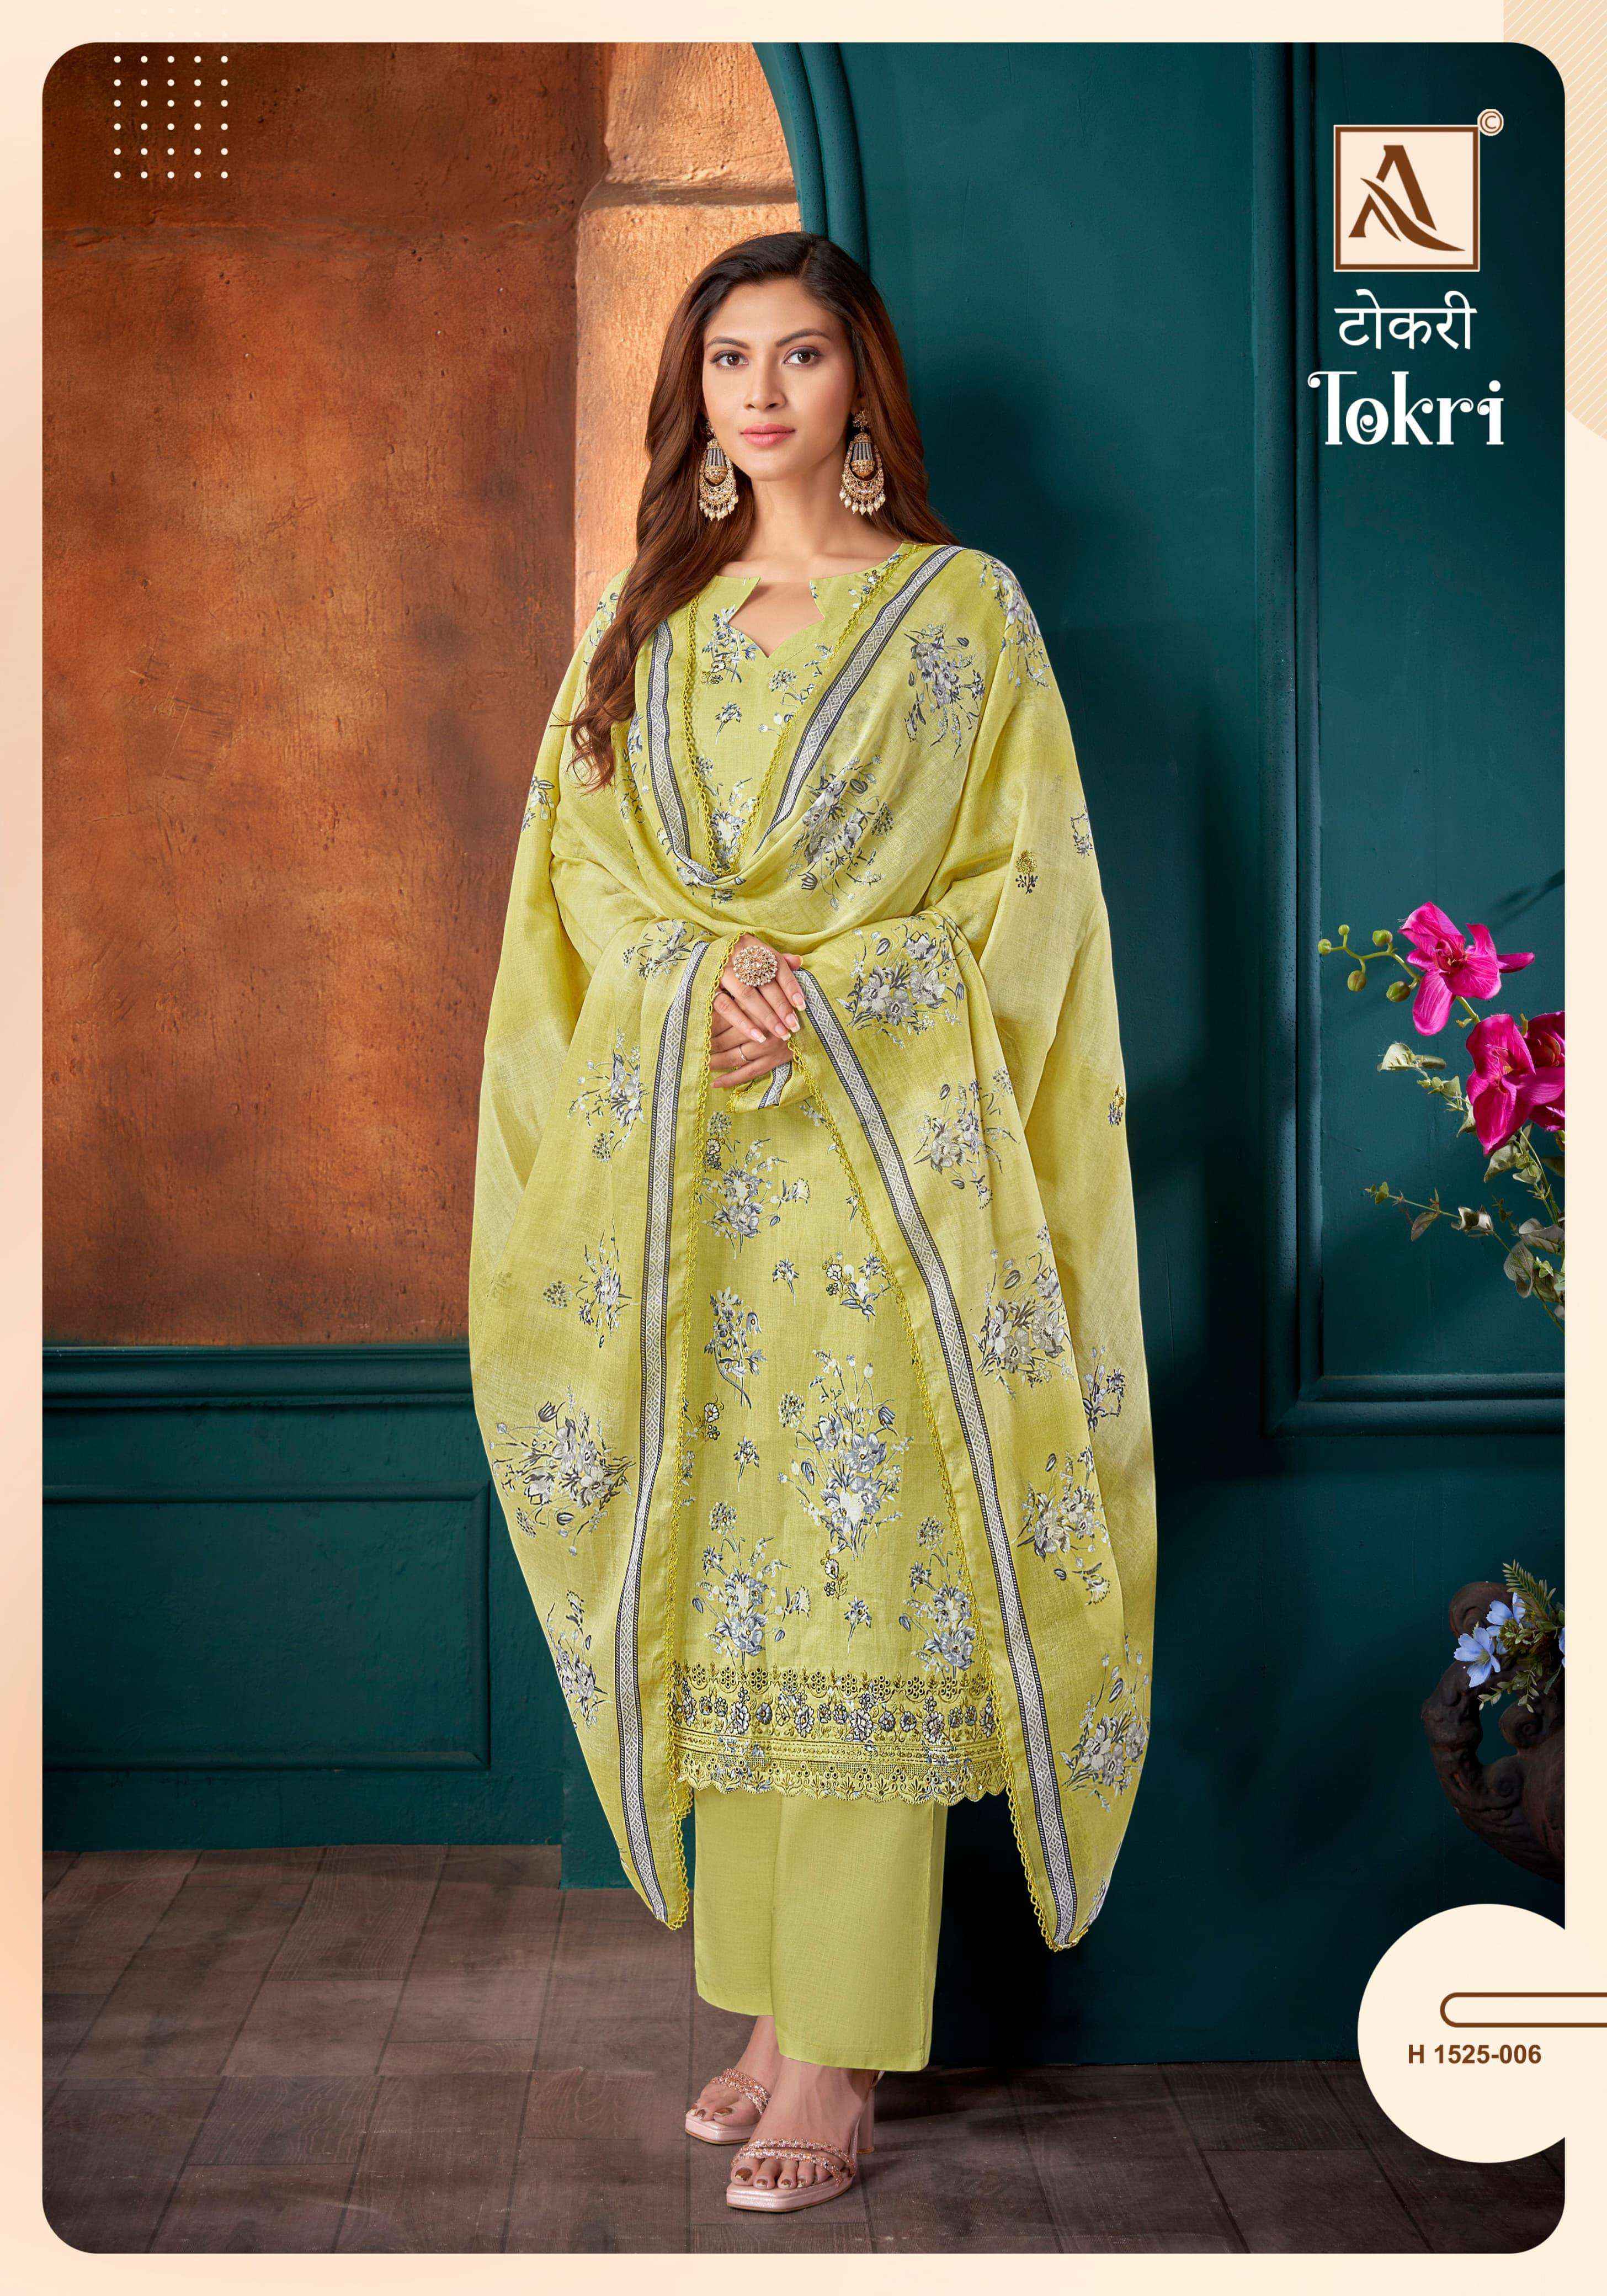 Alok Tokri Cambric Cotton Dress Material 6 pcs Catalogue